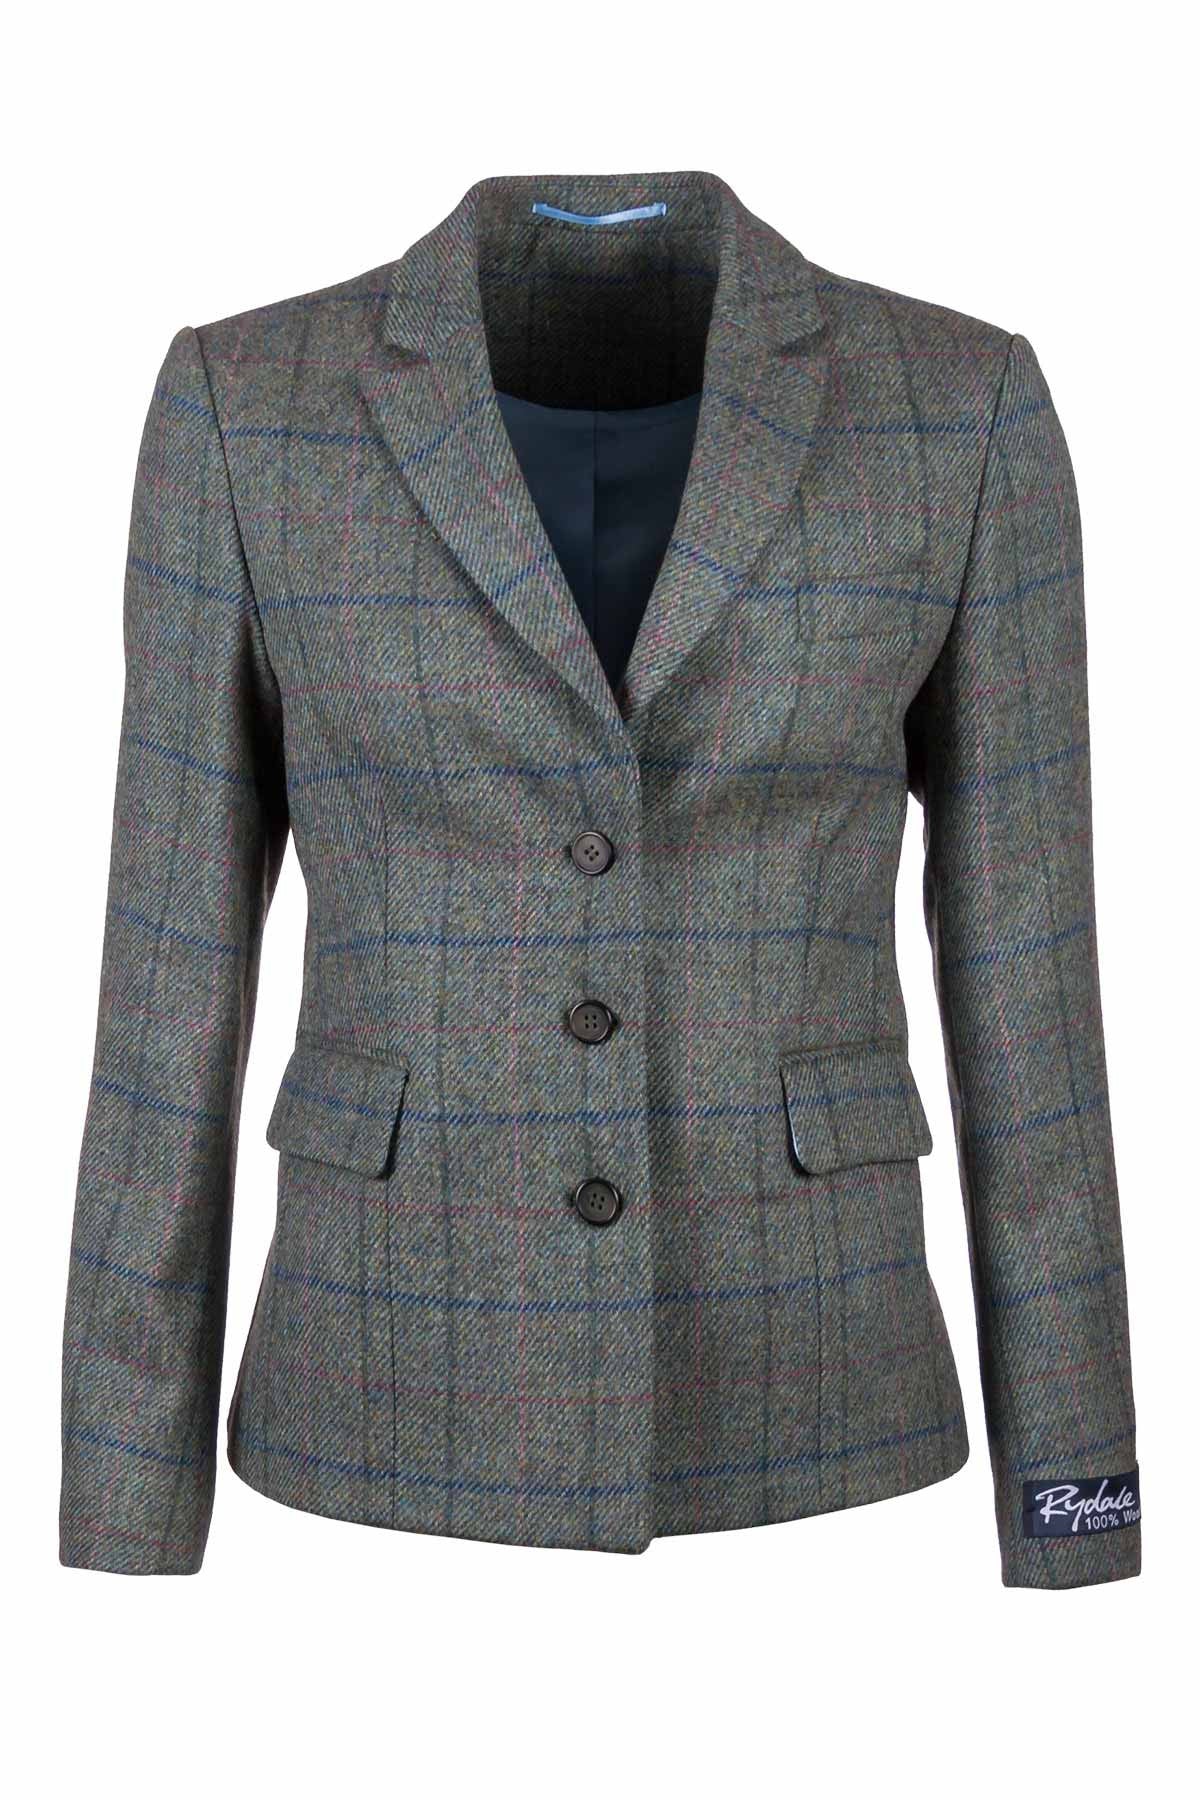 Womens Tweed Fitted Blazer UK | Ladies Short Tweed Jacket | Rydale